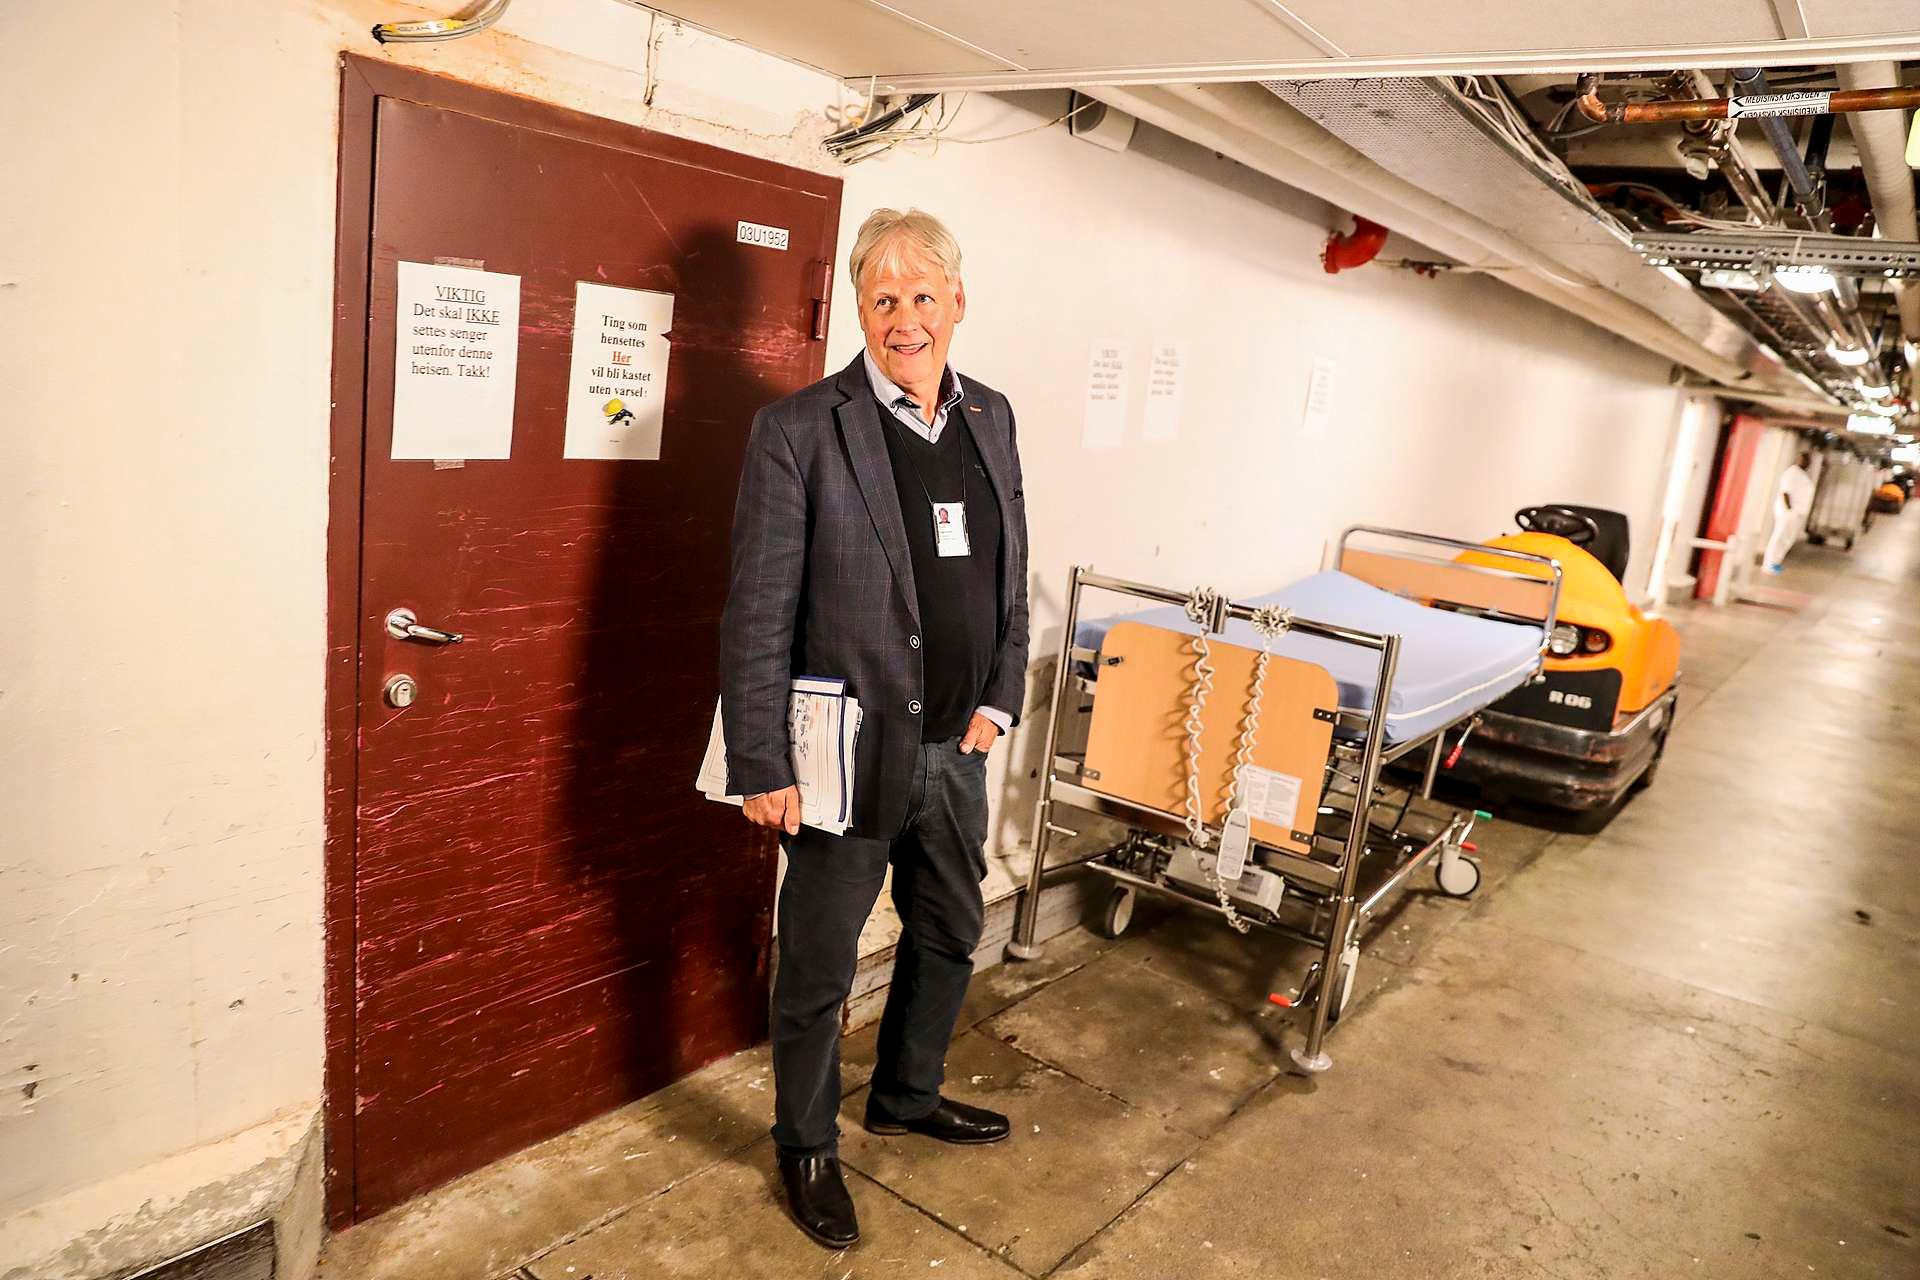 Eiendomssjef ved Oslo sykehusservice, Thomas Magnusson, forteller at mange steder må rør og ledninger legges utenpå veggene. Bildet er fra kulverten. Her er det kun ansatte som oppholder seg.